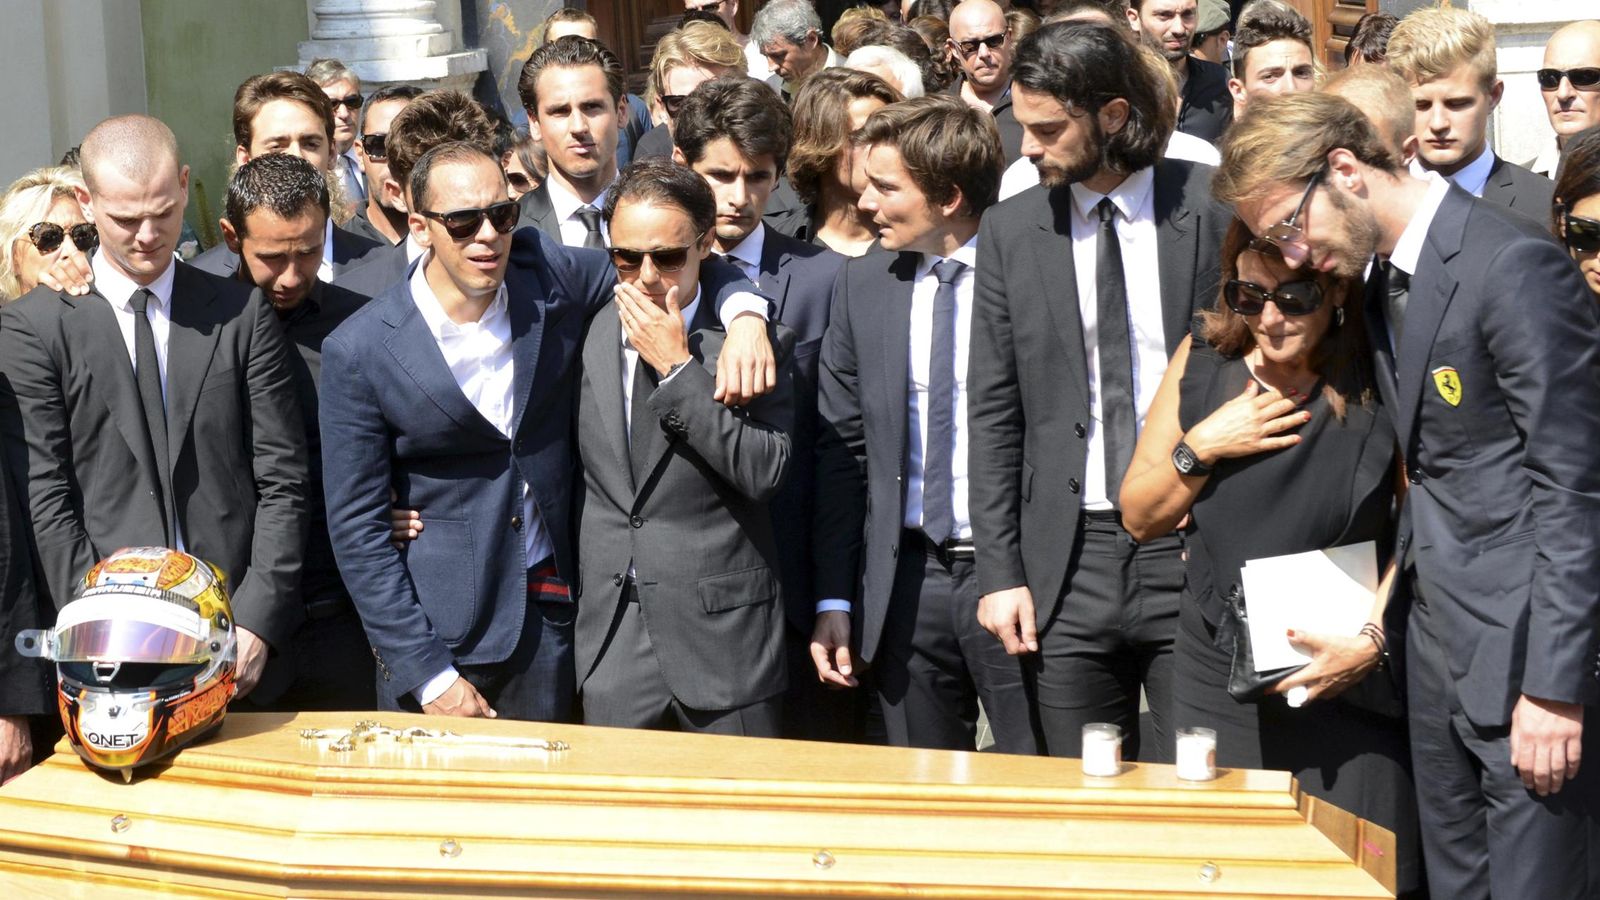 Foto: Jean-Eric Vergne, Felipe Massa, Pastor Maldonado y otros pilotos durante el funeral de Jules Bianchi celebrado el martes (Reuters)